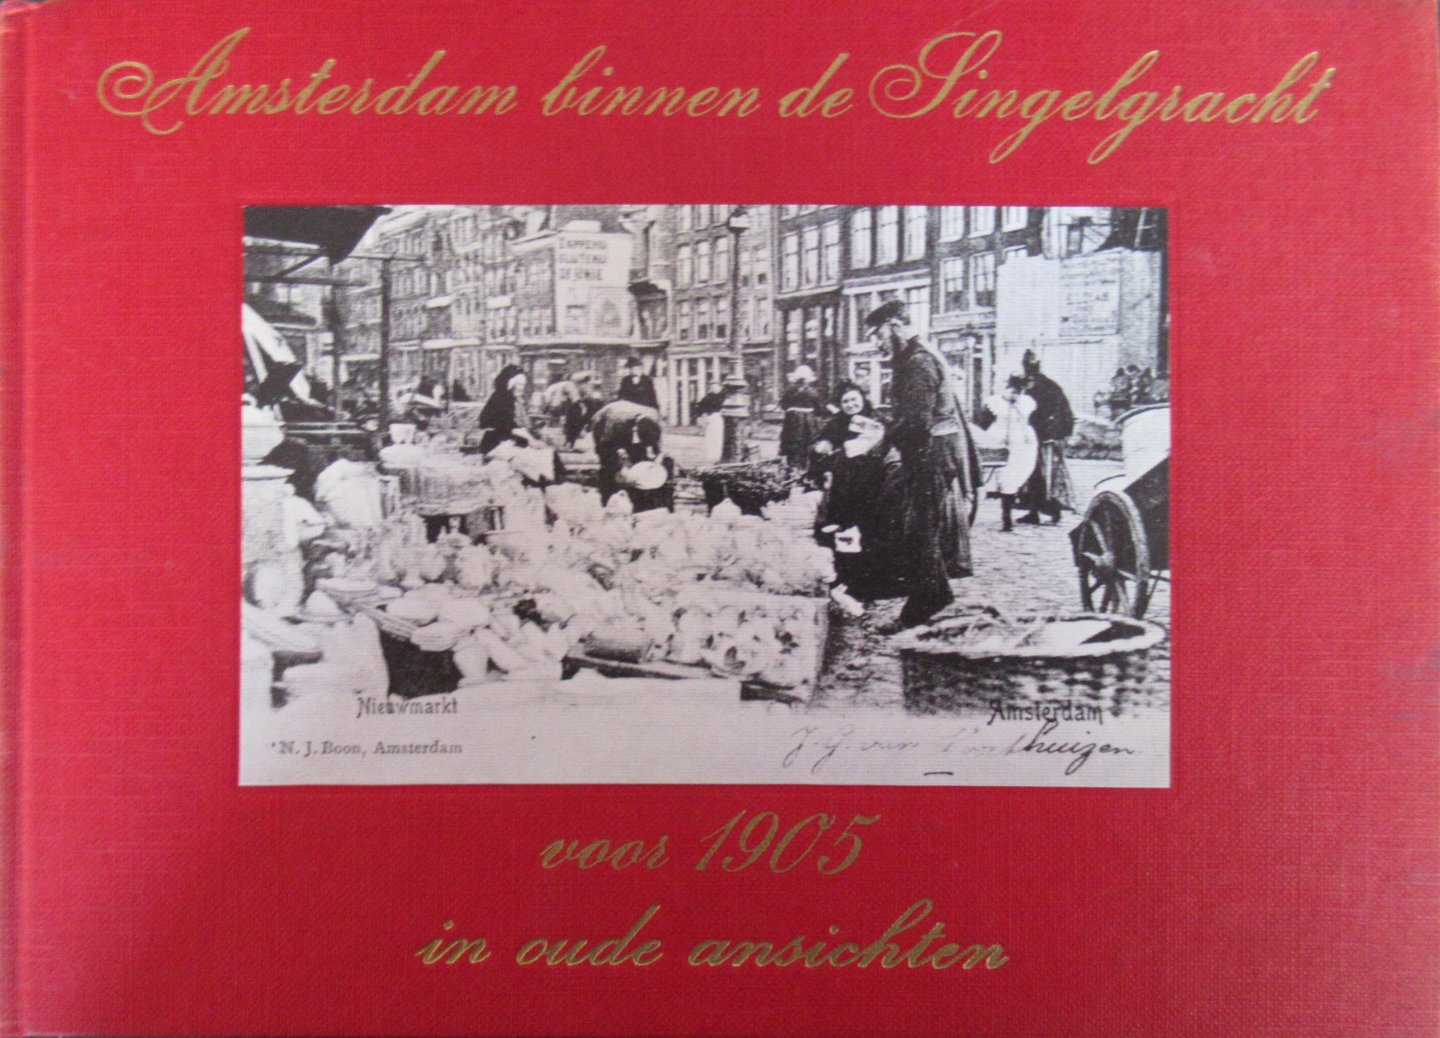 Hofman, W. - Amsterdam binnen de singelgracht voor 1905 in oude ansichten